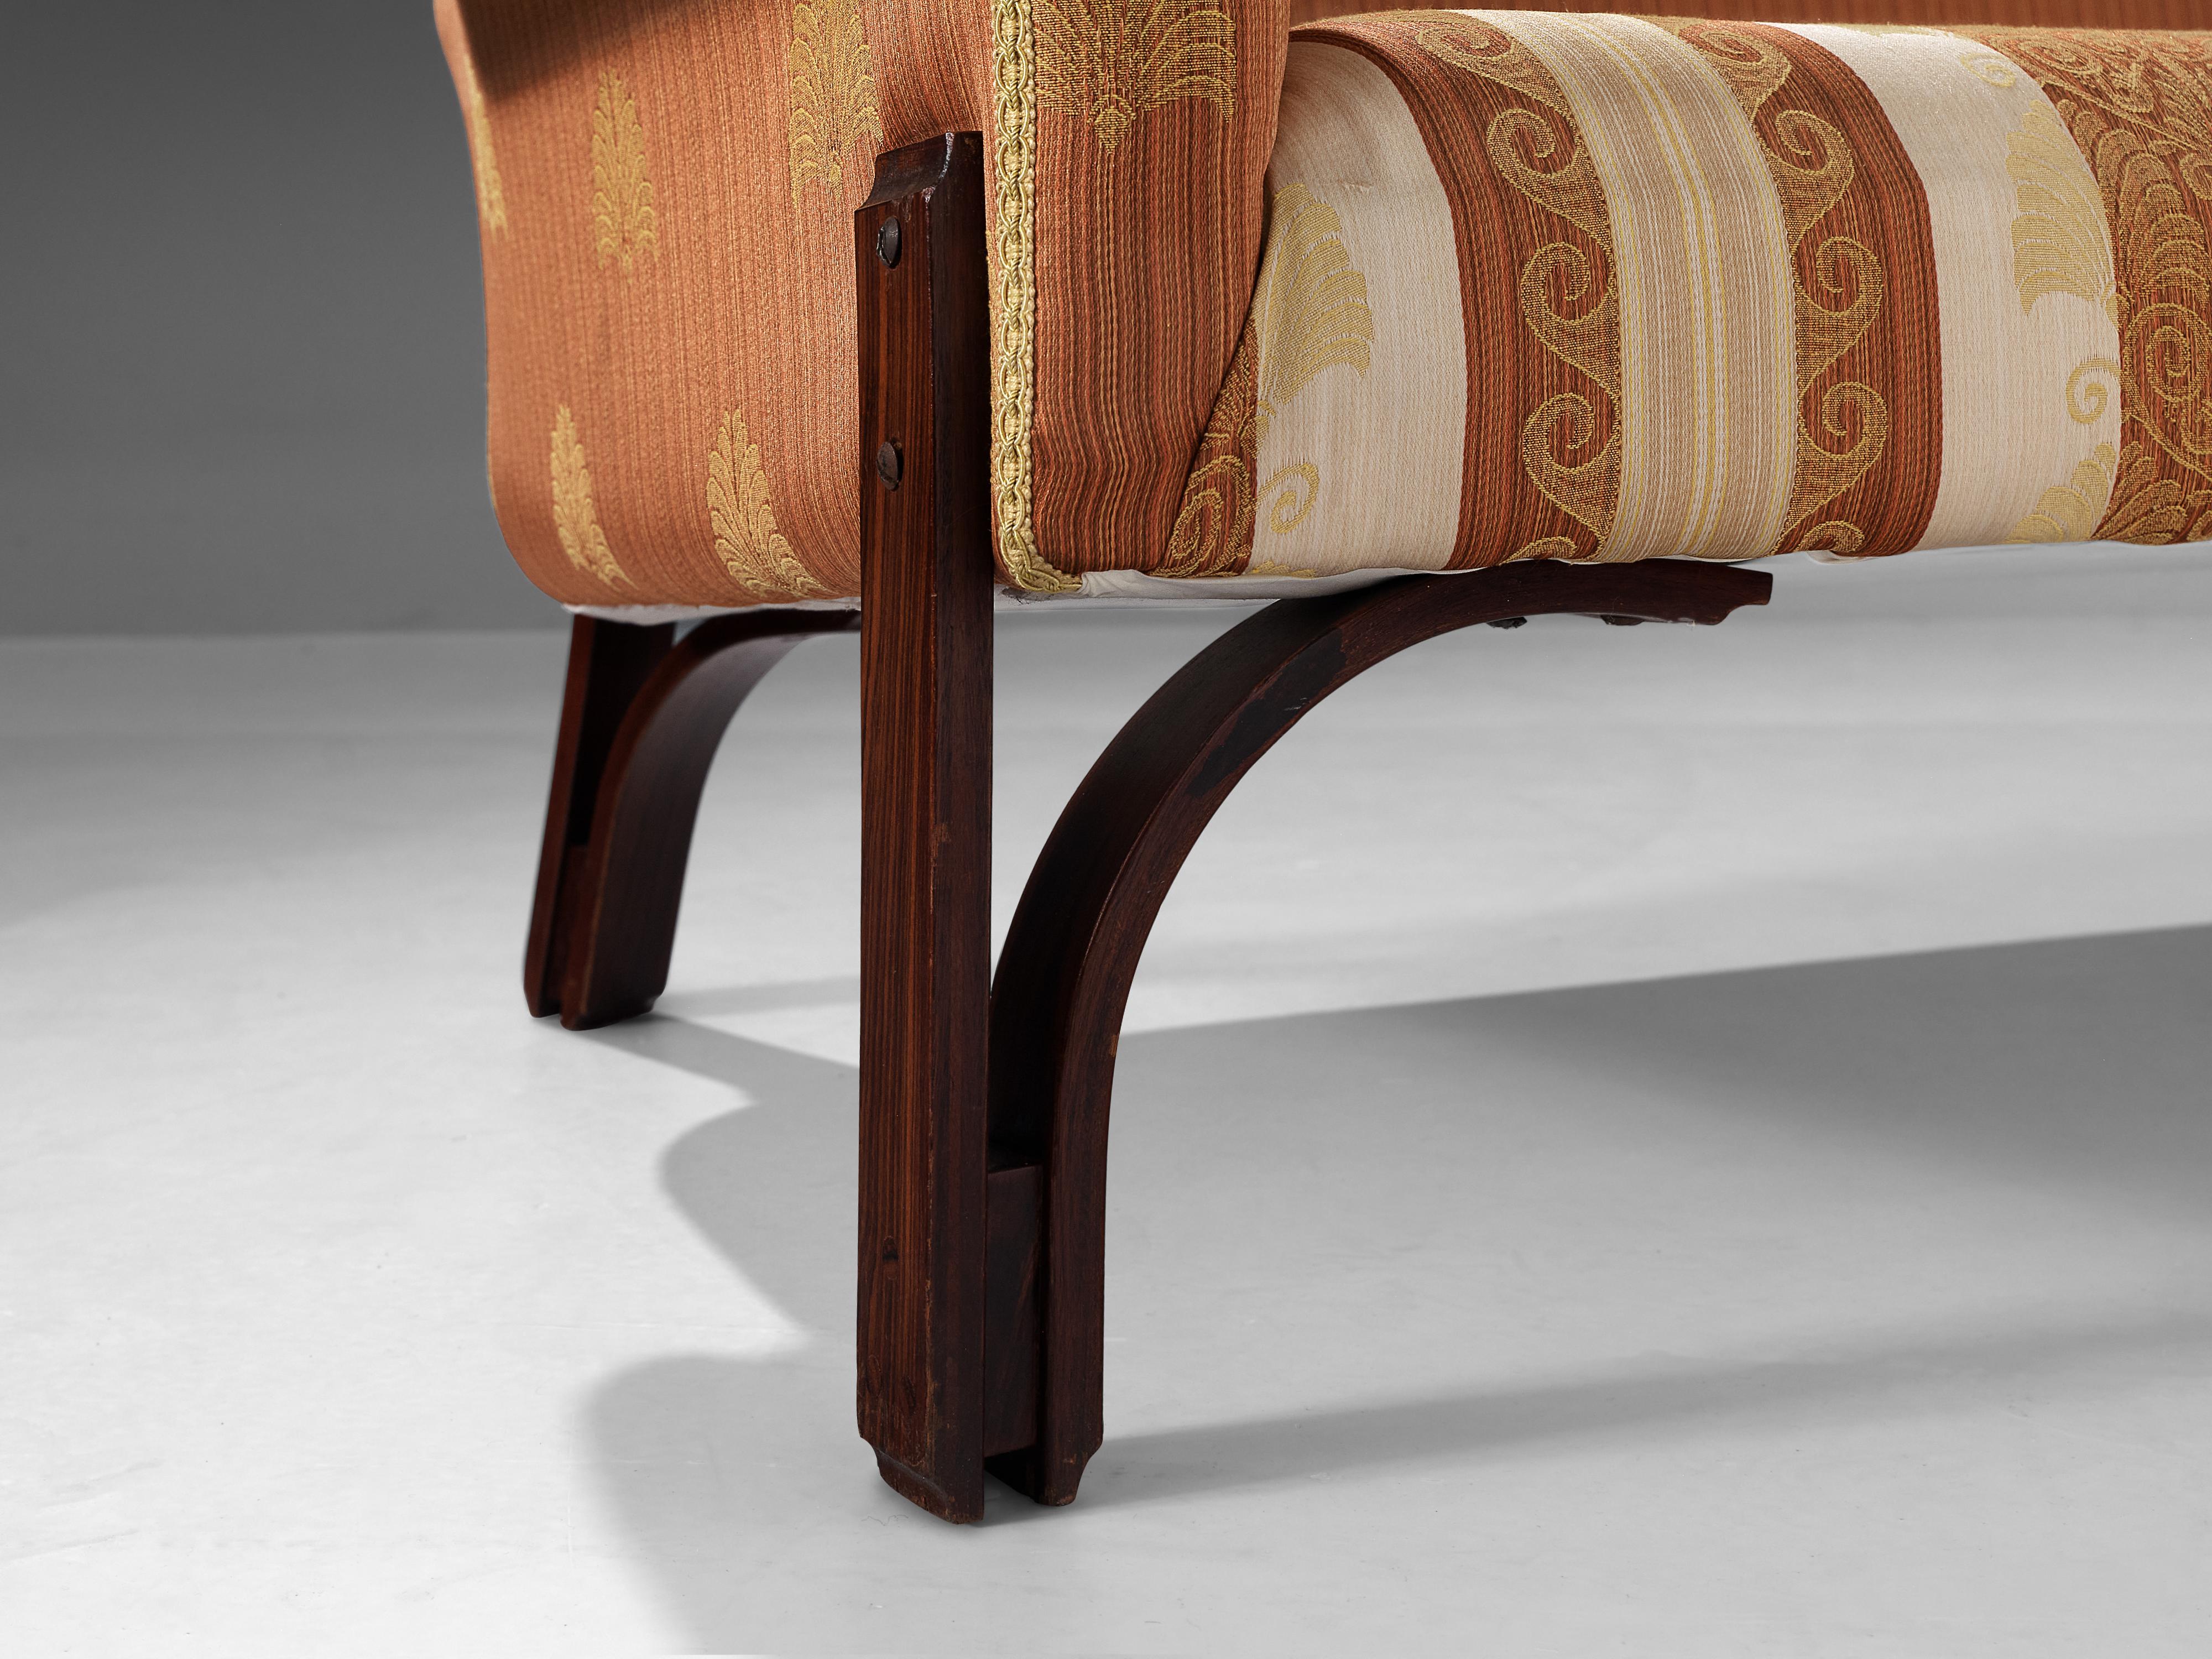 Achilli, Brigidini & Canella 'Quadrifoglio' Sofa in Patterned Upholstery 2